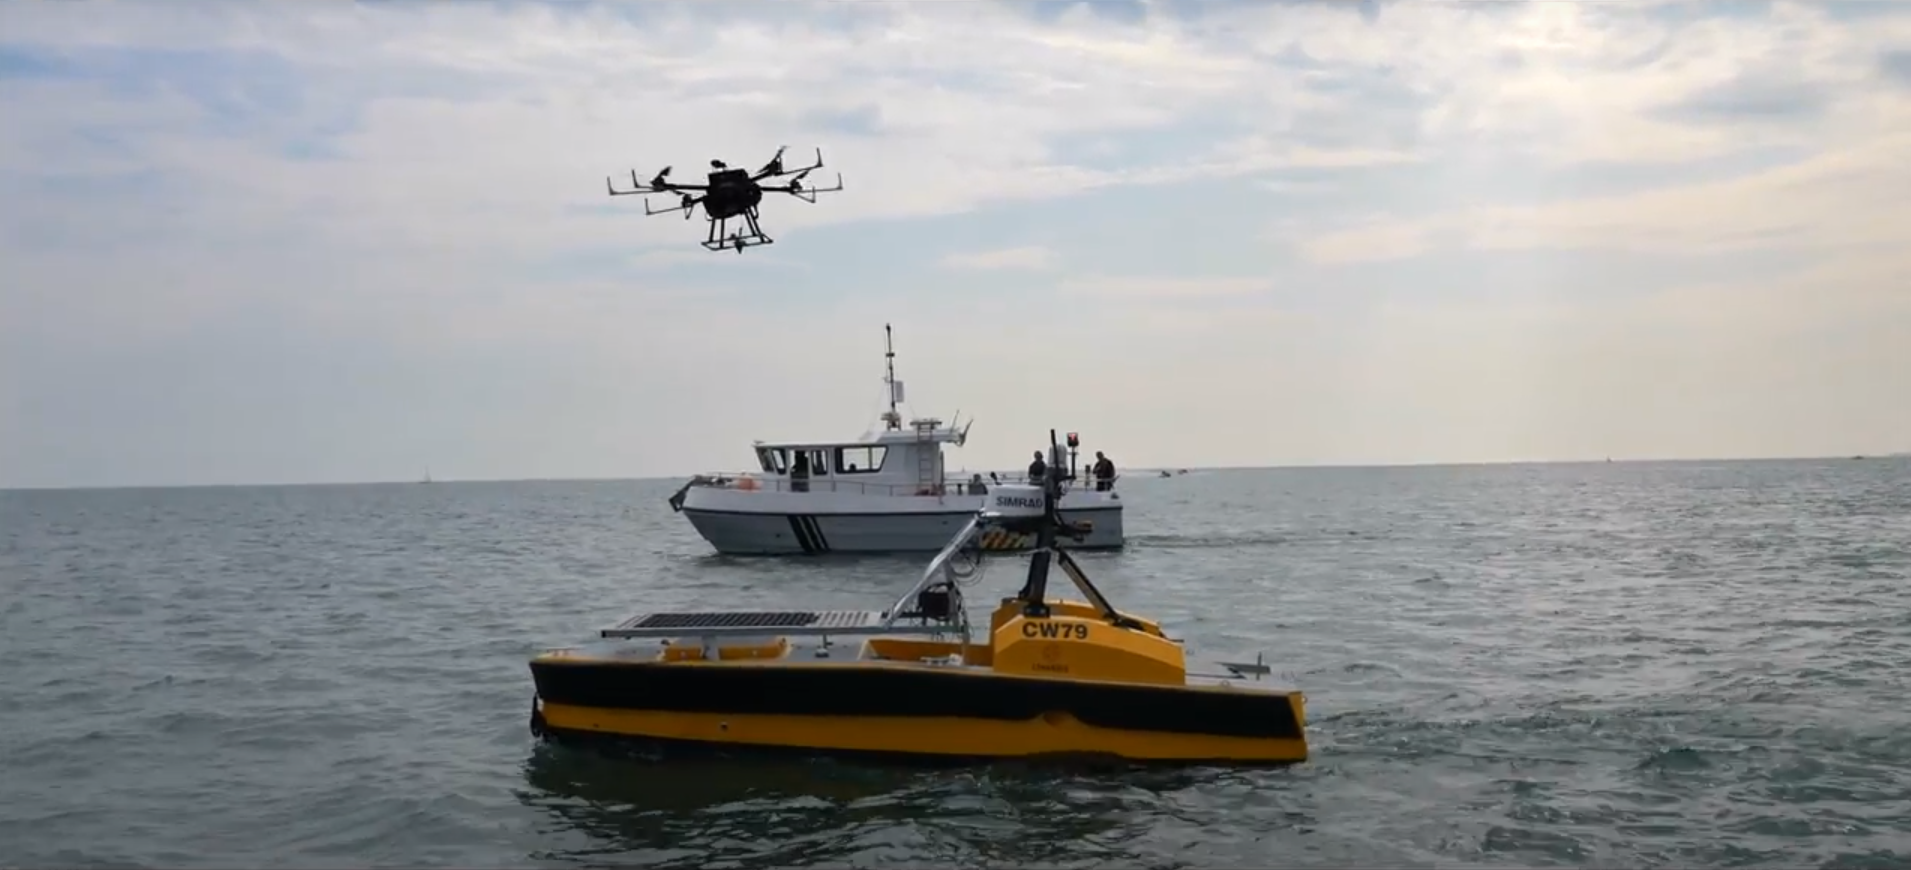 drone landing on autonomous vessel/drone